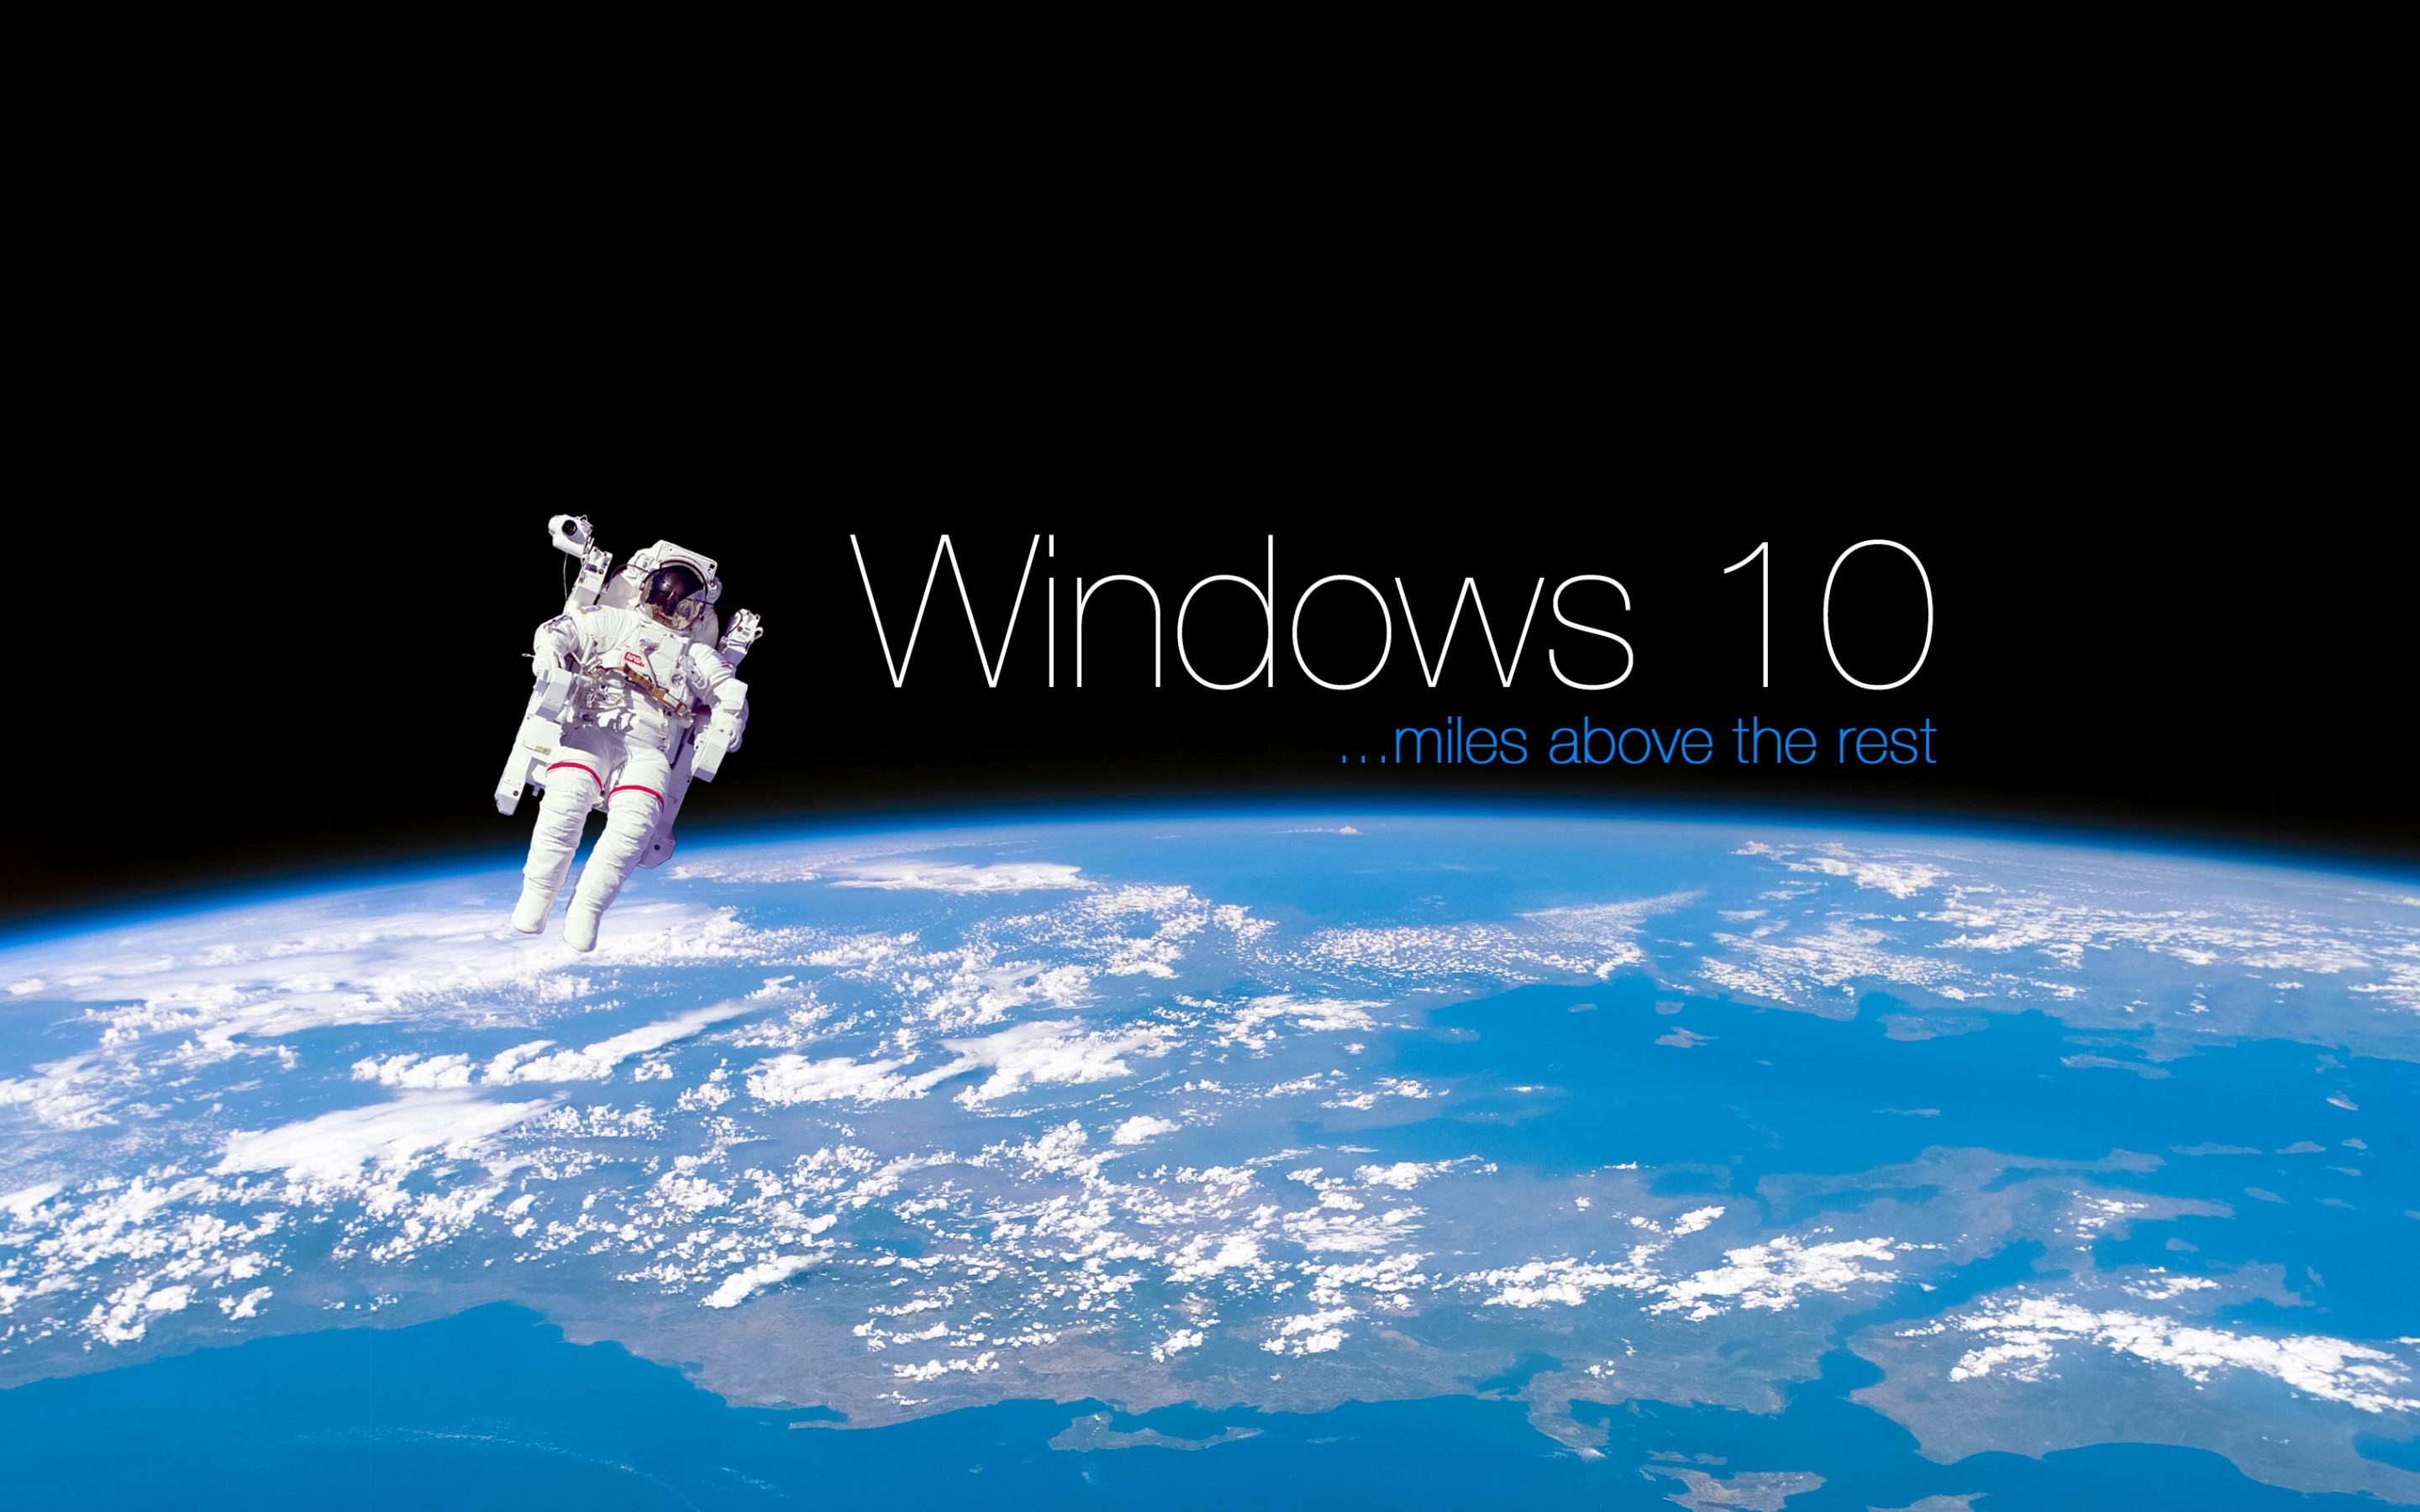 49+] Space Wallpaper Windows 10 - WallpaperSafari